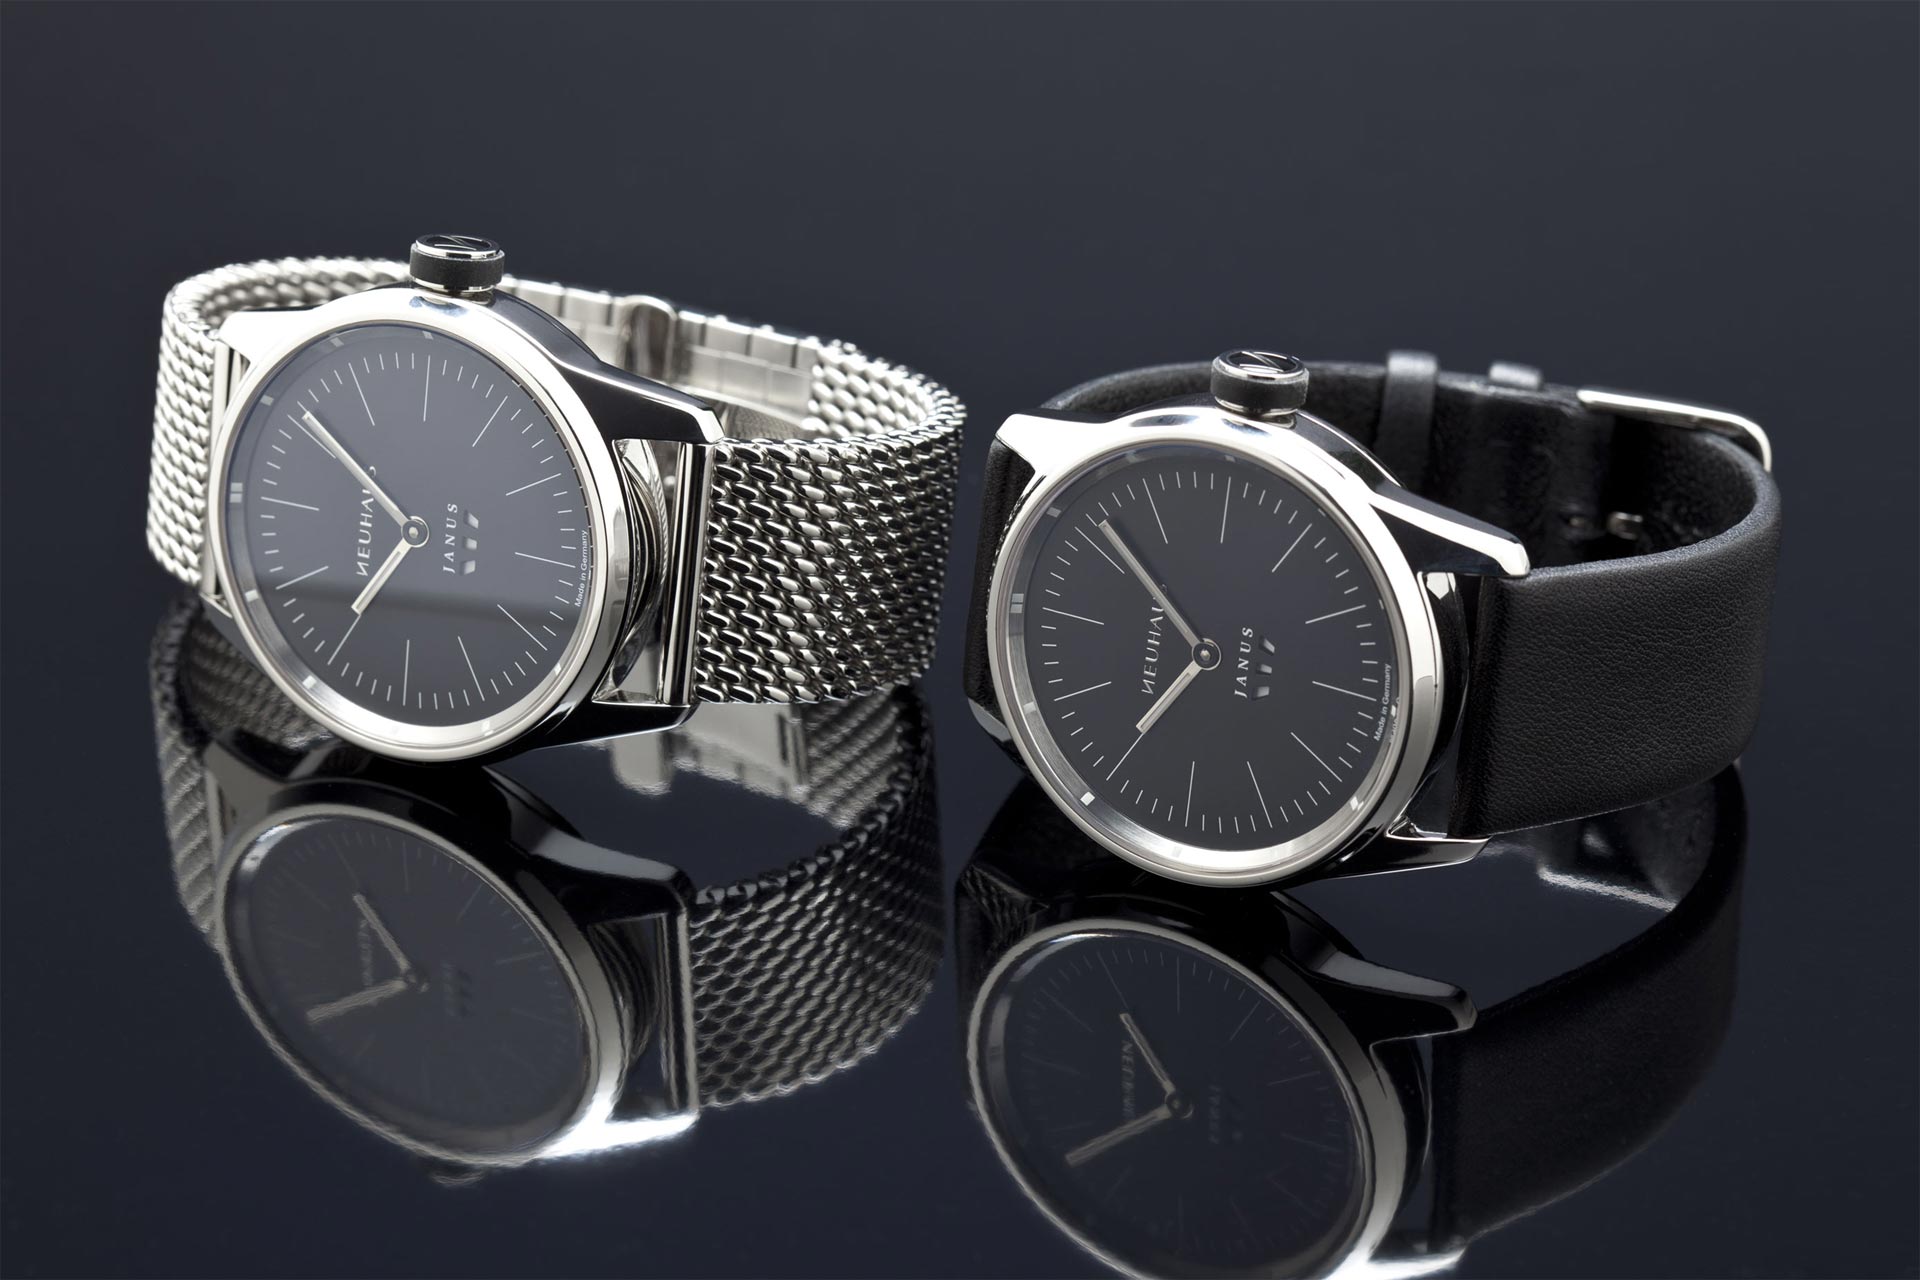 Zweizeigeruhr von NEUHAUS Timepieces, Modell JANUS minimal, mobil beide